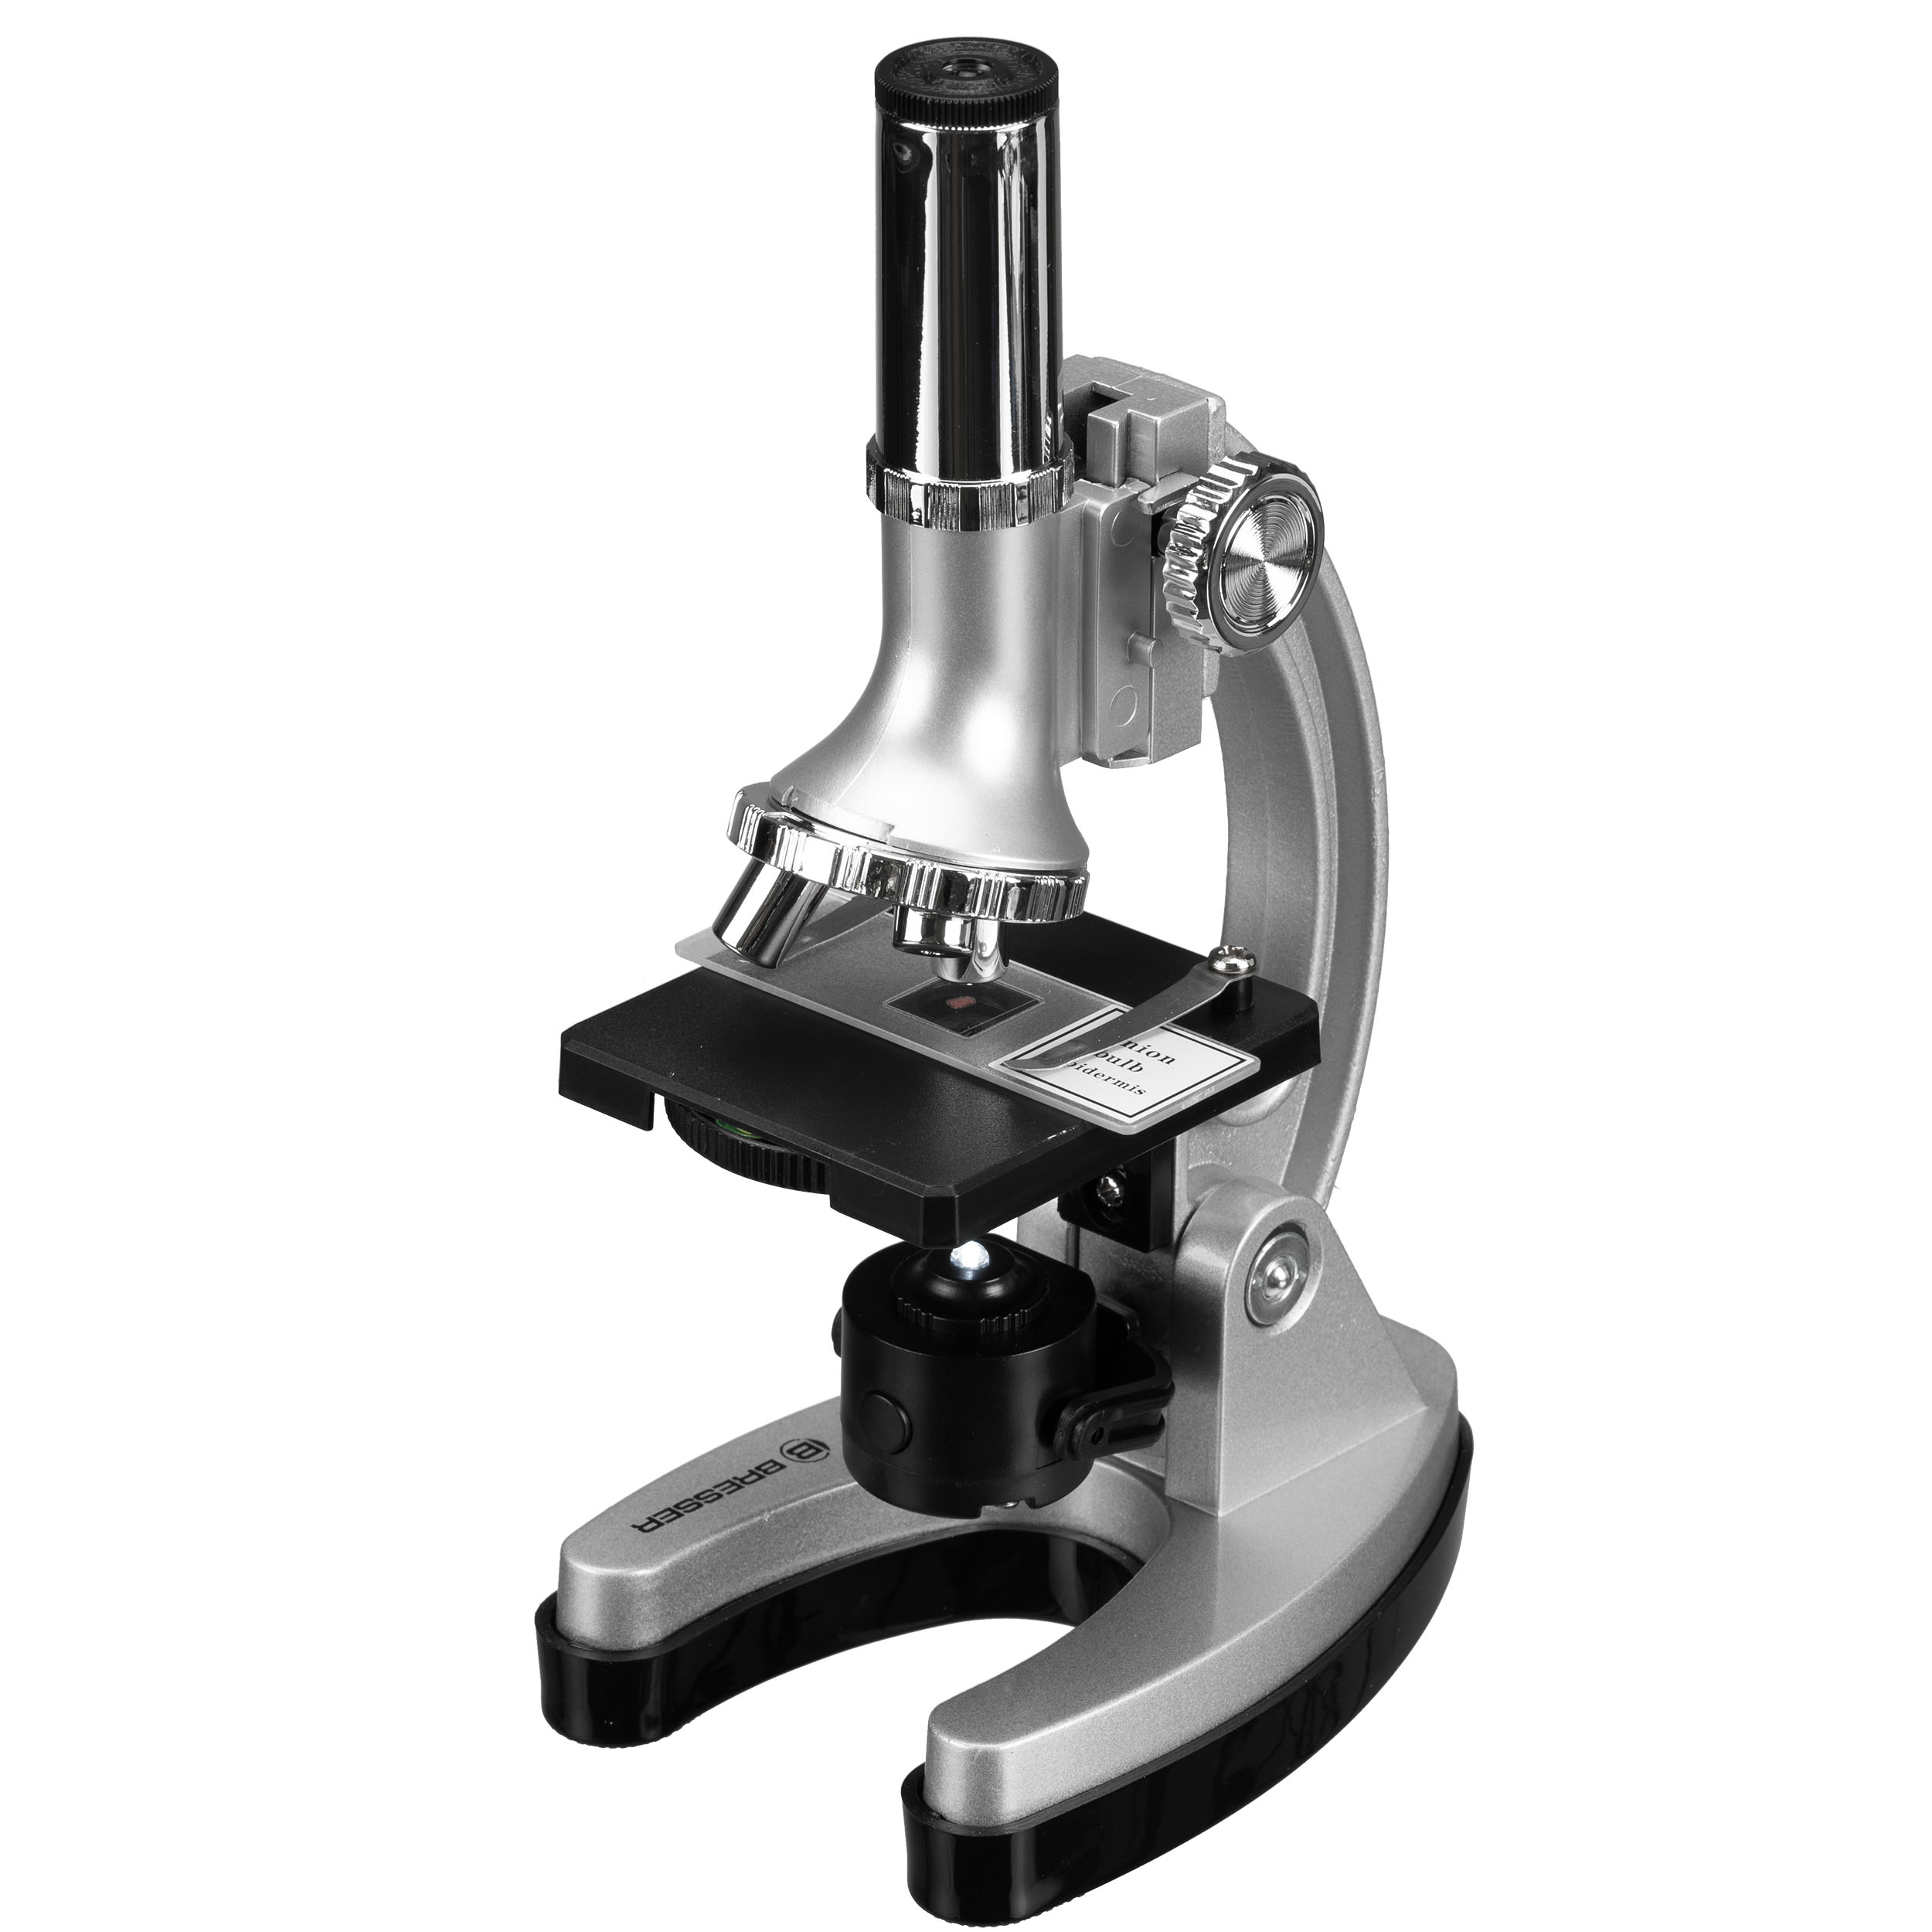 Set Microscopio BRESSER JUNIOR Biotar 300x-1200x (senza valigetta)